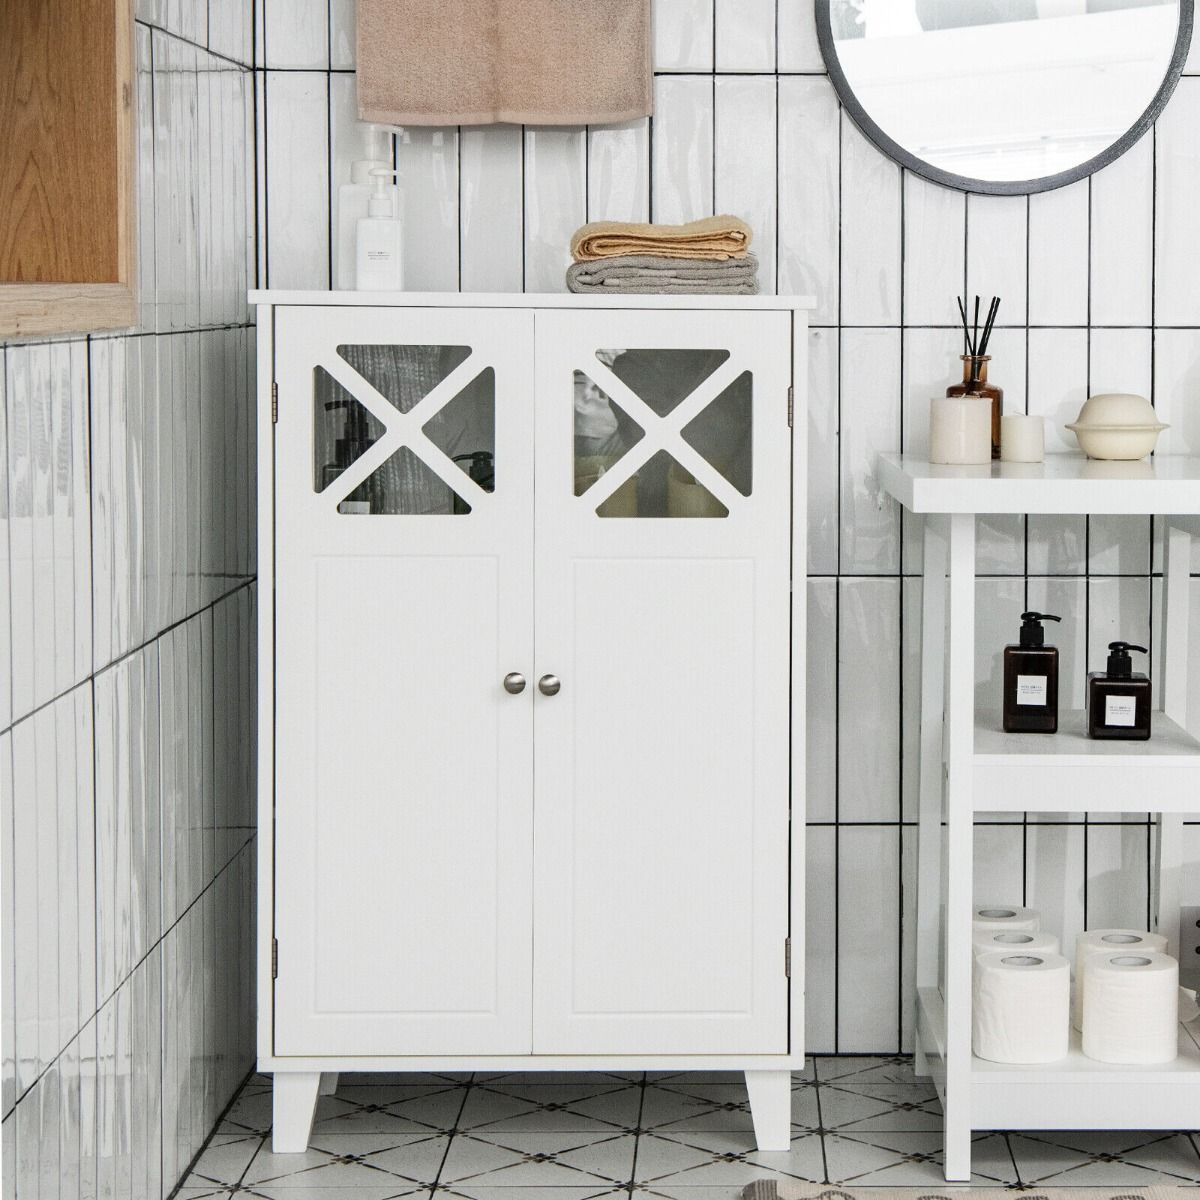 Wooden Bathroom Floor Storage Cabinet with Double Doors and Adjustable Shelf